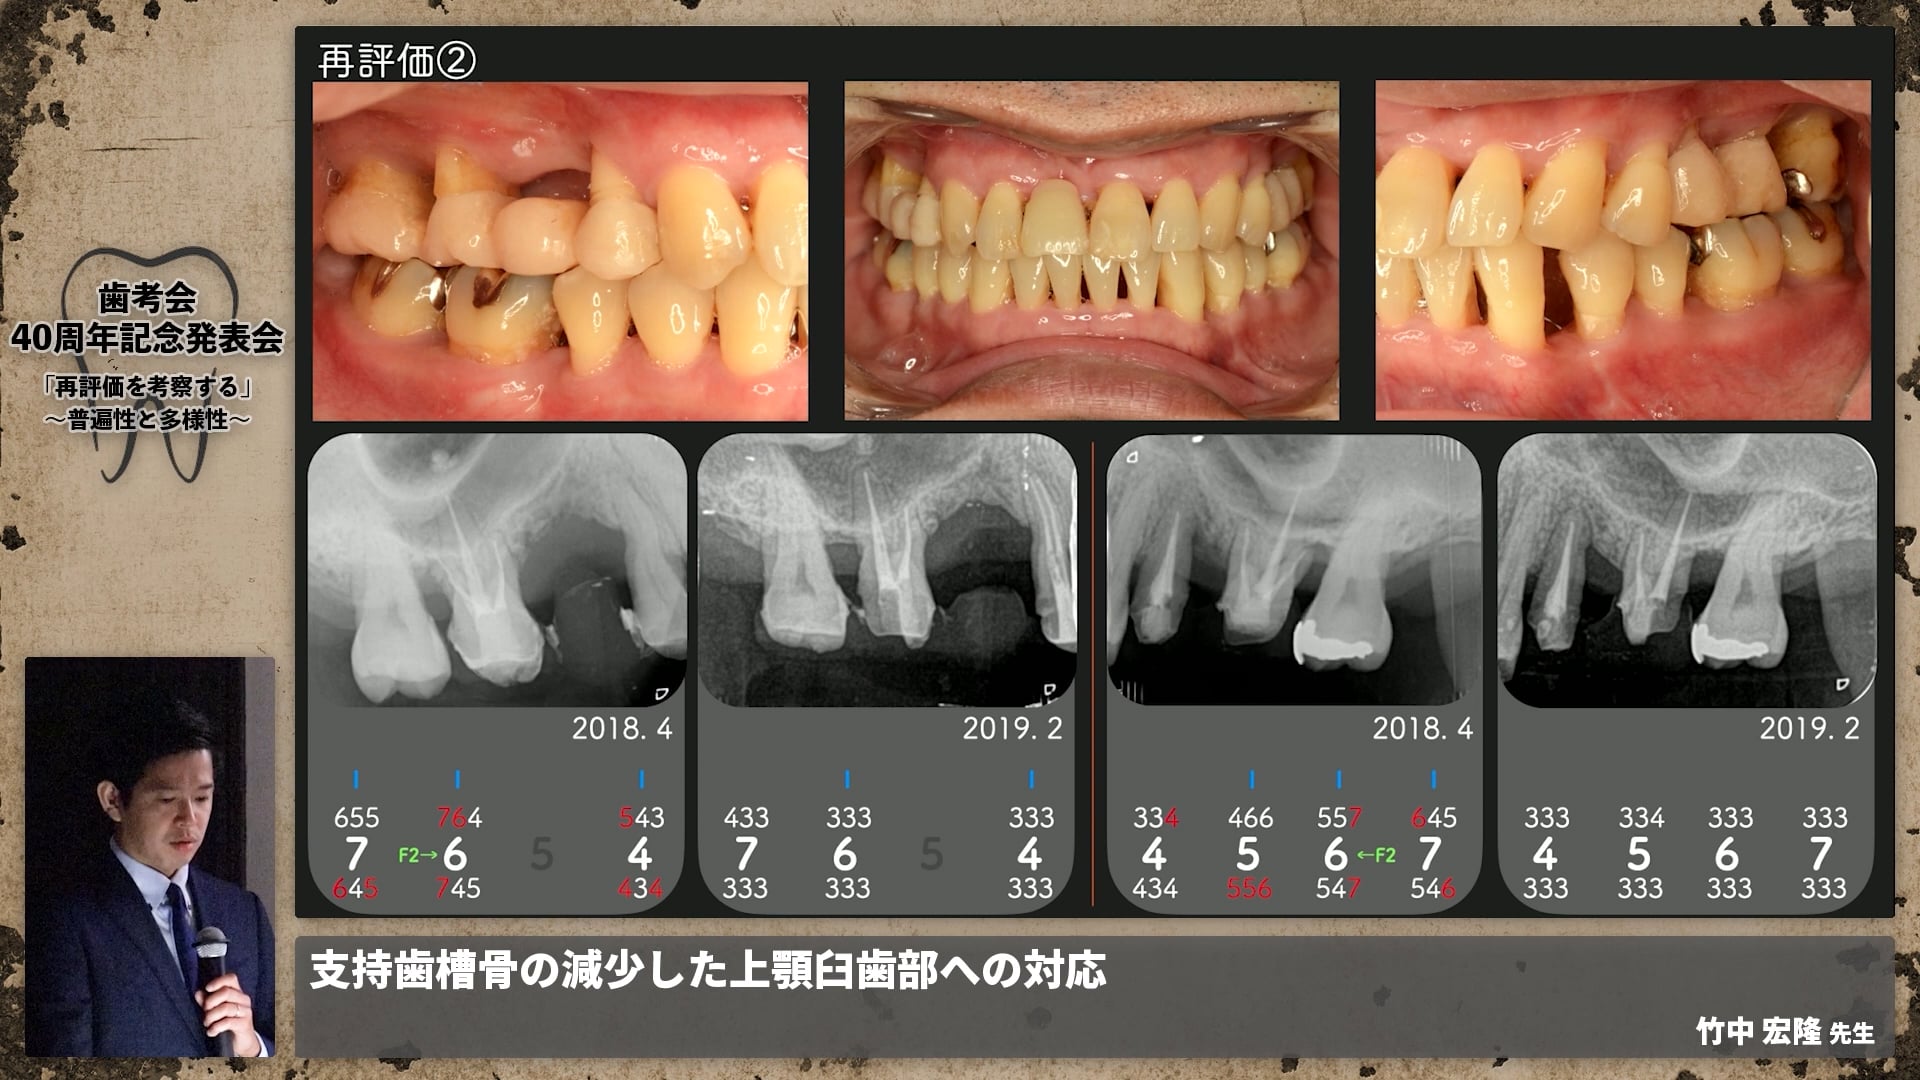 【ペリオ班】支持歯槽骨の減少した上顎臼歯部への対応│竹中 宏隆先生